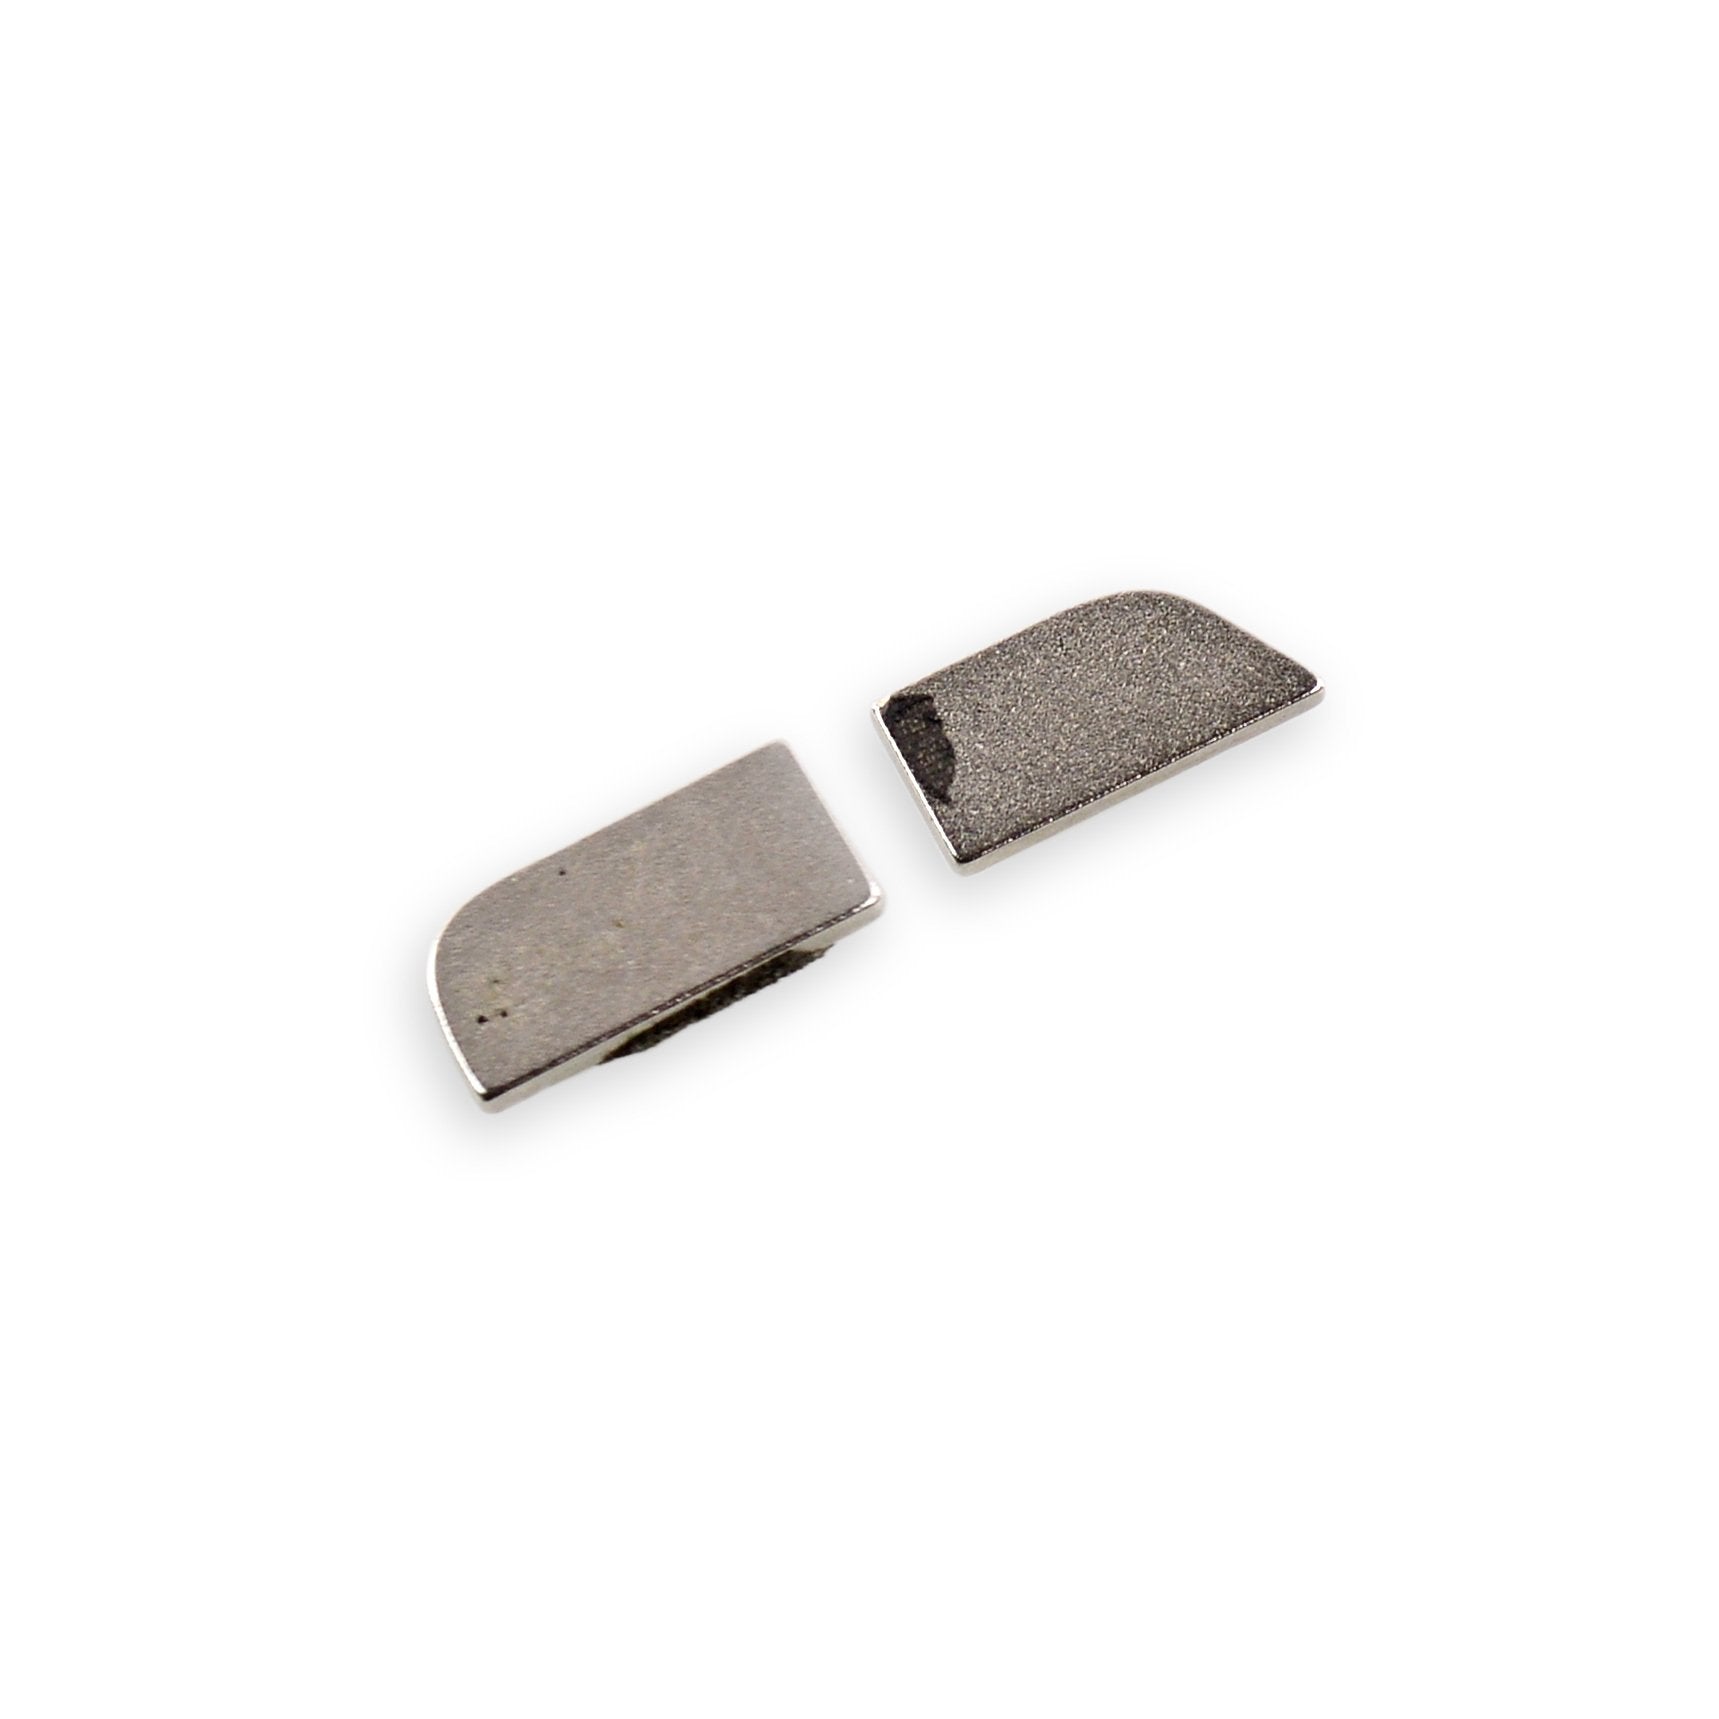 iPad mini & mini 2 Digitizer Magnets